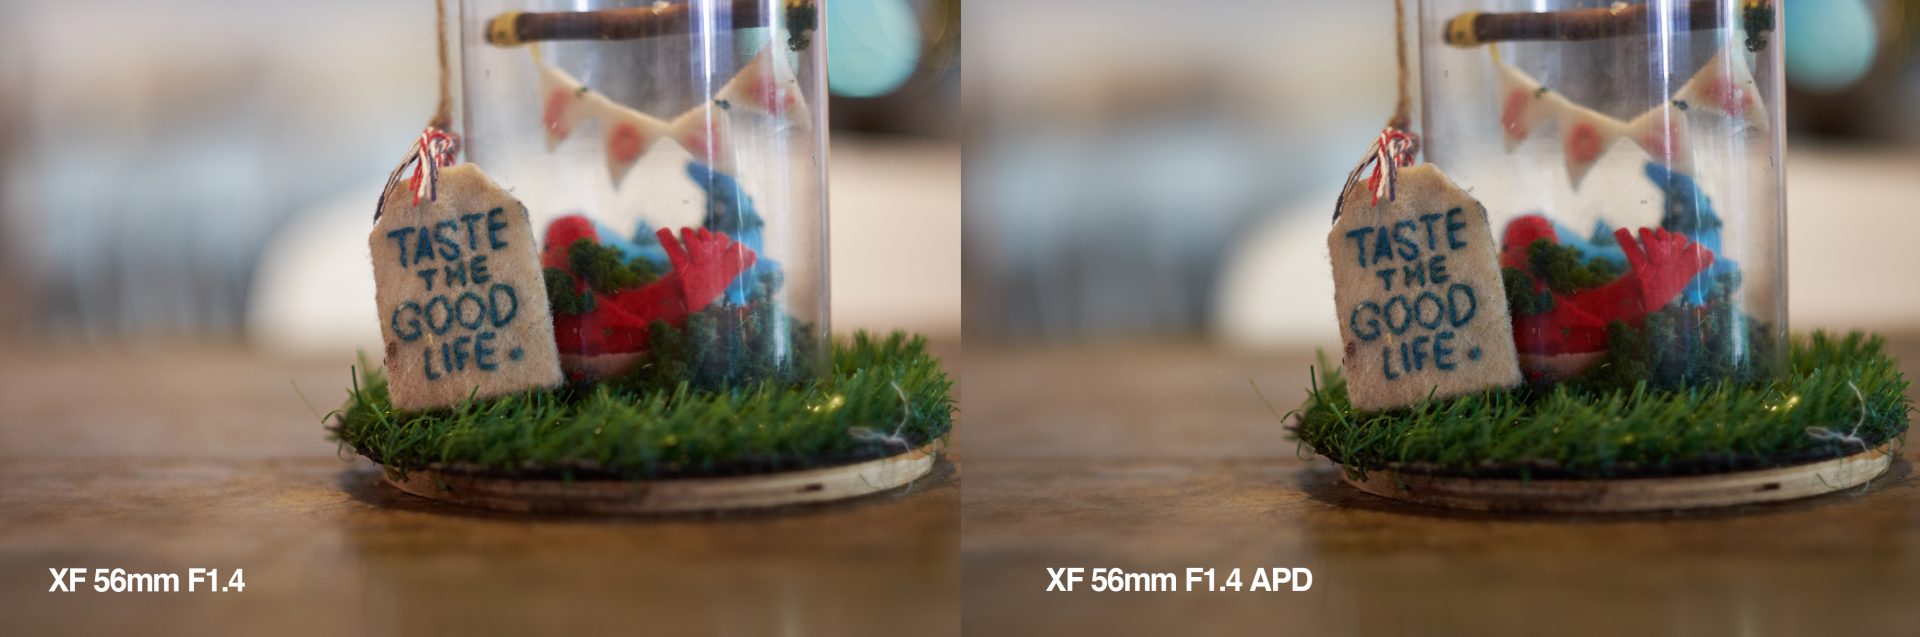 Lý do nên chọn ống kính XF 50mm F1.0 và đâu là khác biệt so với XF 56mm F1.2 APD